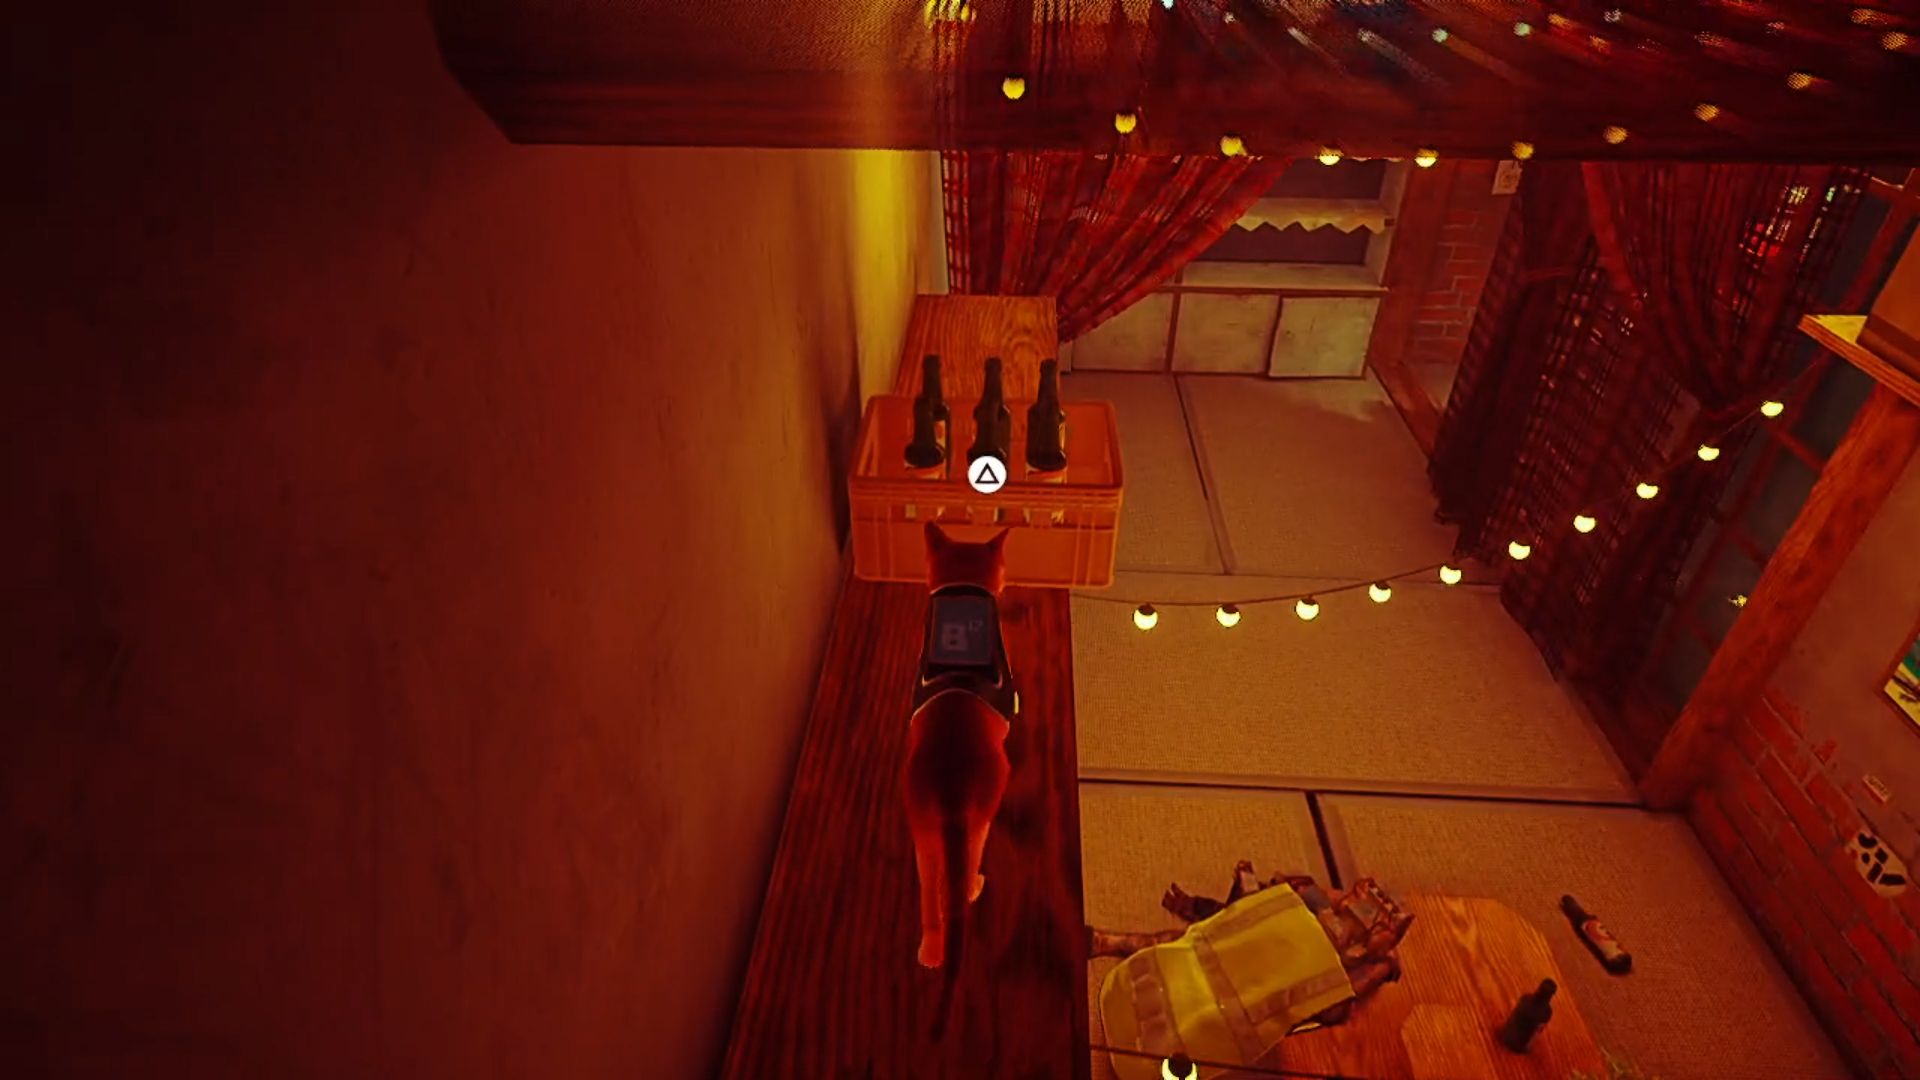 کلاه کارگر ولگرد: تابش نارنجی در قفسه در اتاق عقب نوار در میانه شهر ، قصد دارد یک جعبه آبجو را روی یک روبات مست به سمت خود بکشد تا او را بیدار کند